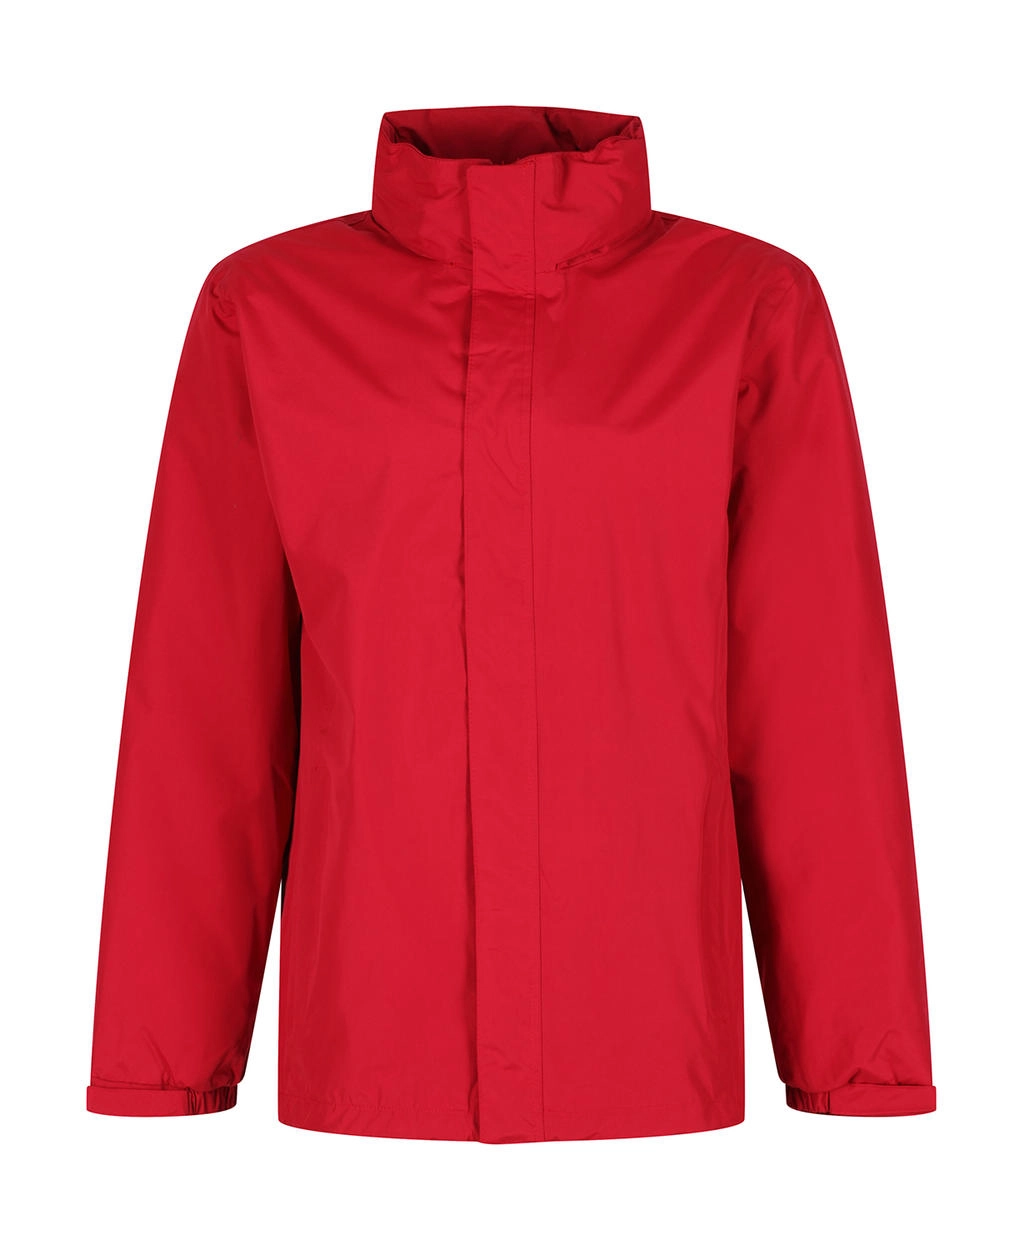 Ardmore Jacket zum Besticken und Bedrucken in der Farbe Classic Red mit Ihren Logo, Schriftzug oder Motiv.